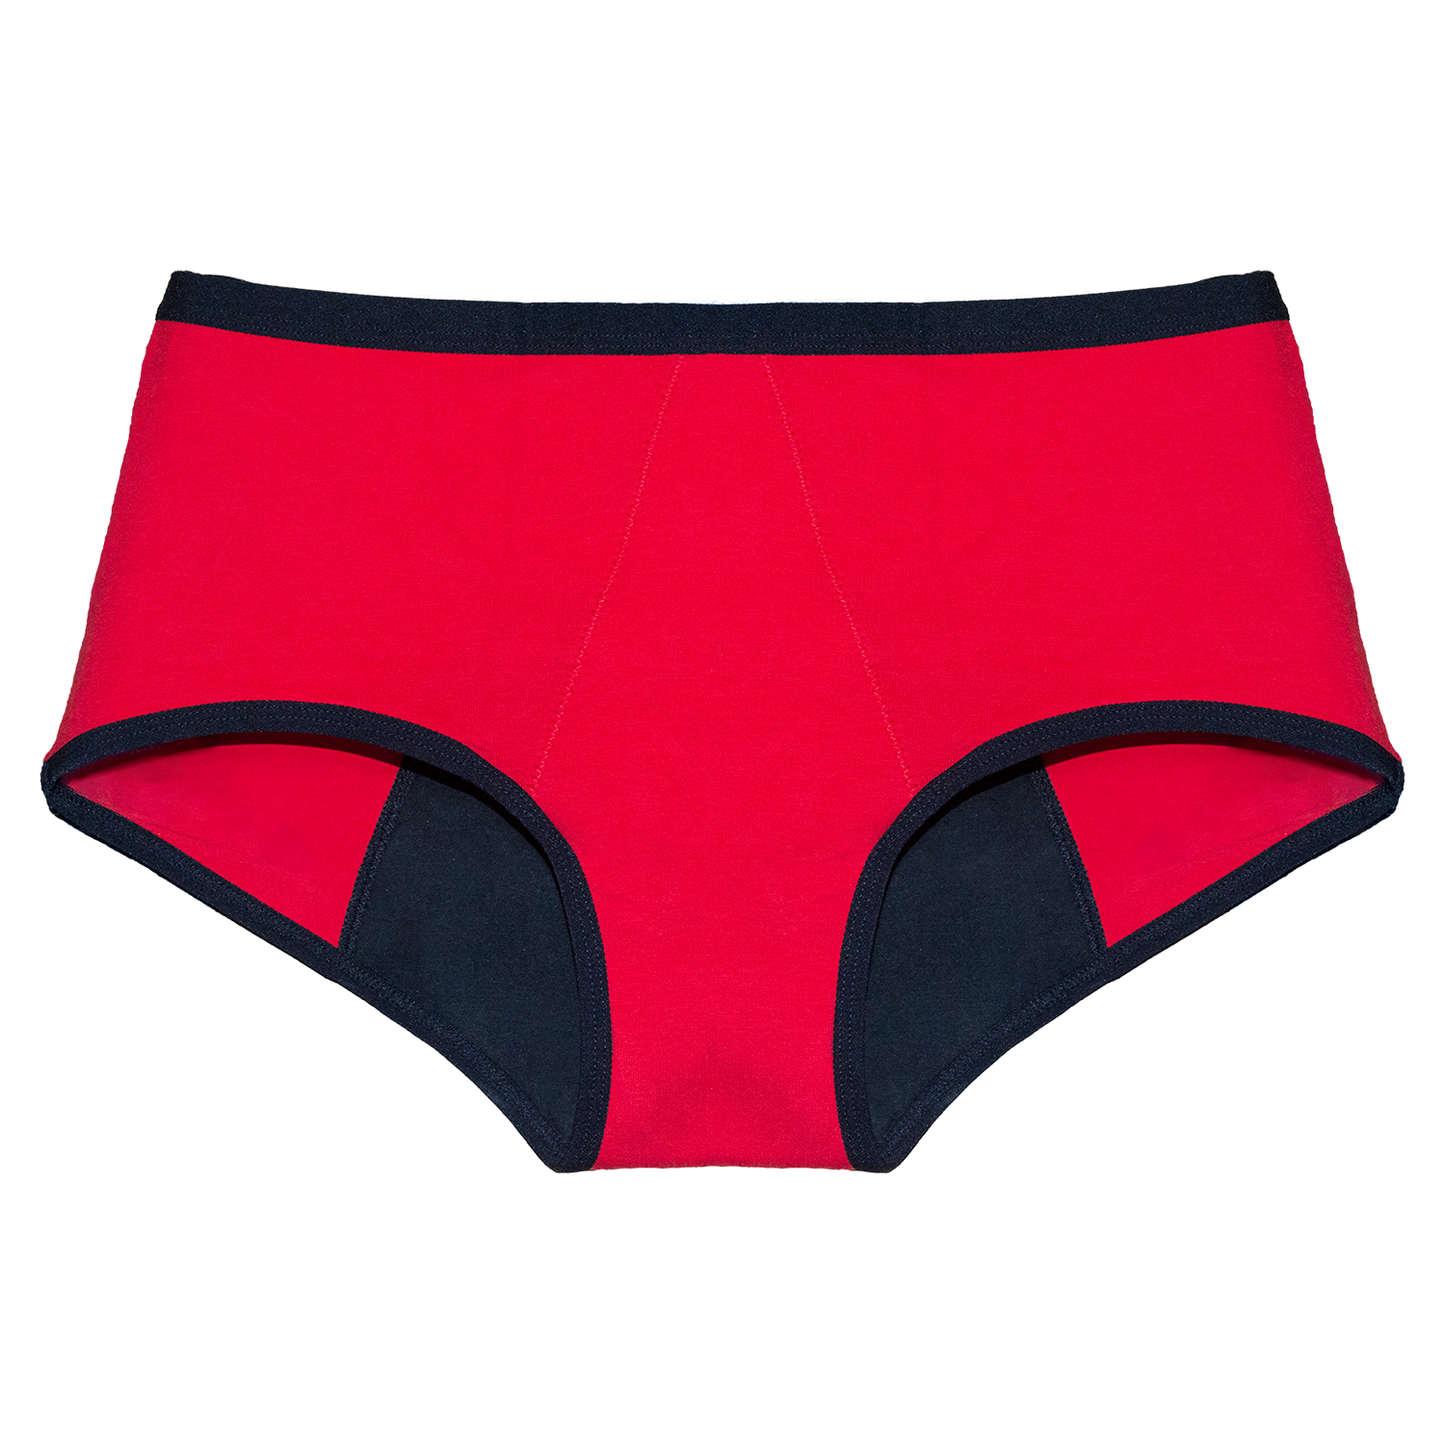 gopadfree red color underwear